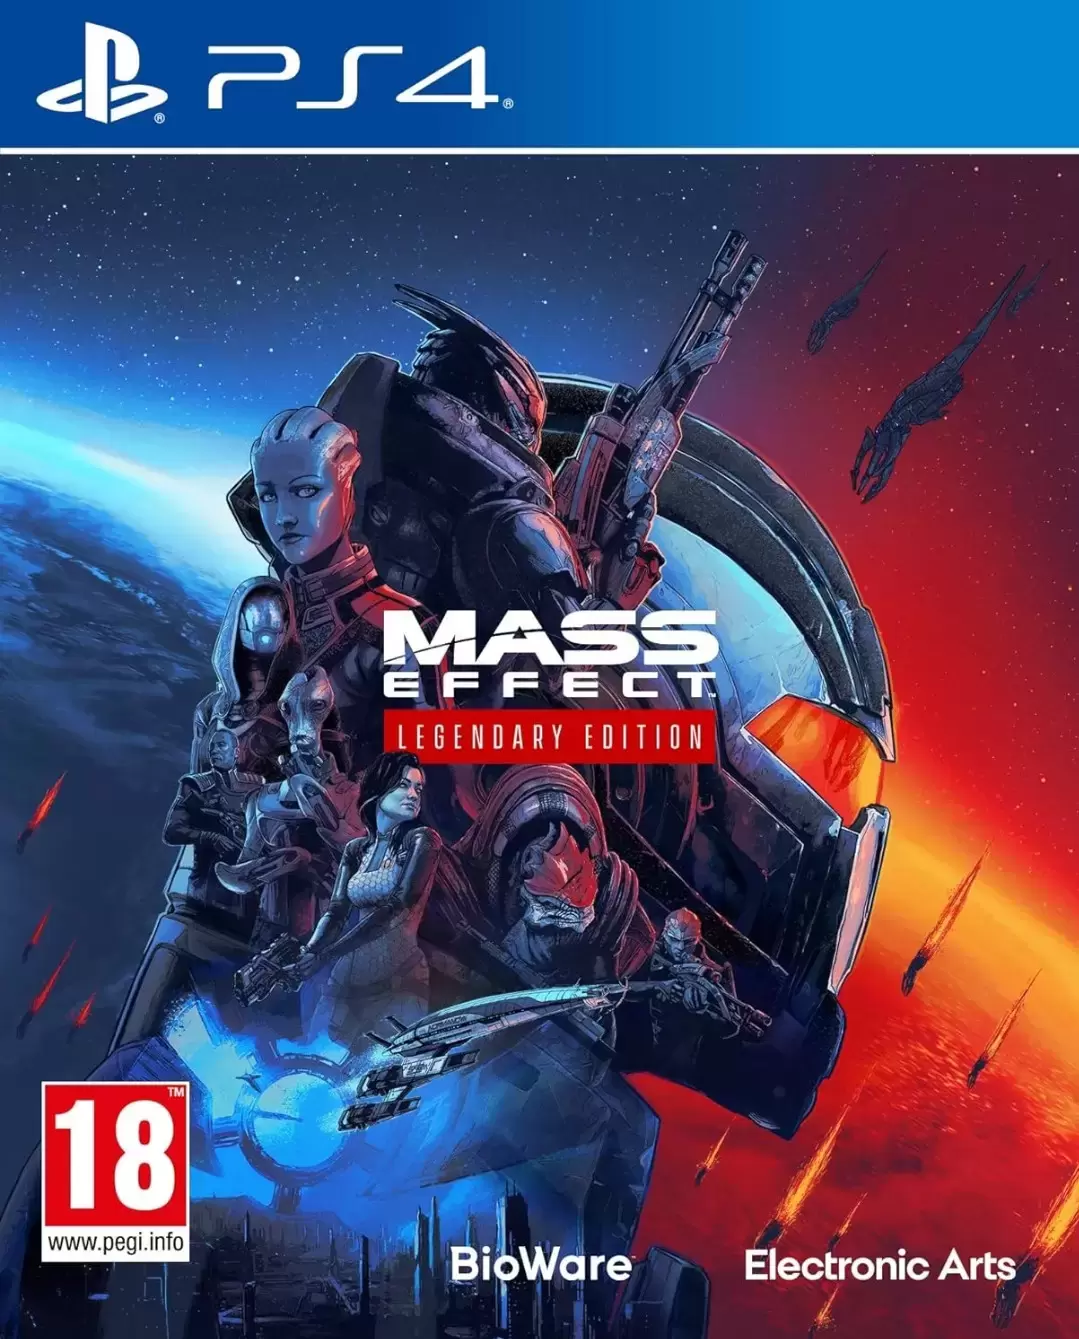 PS4 Games - Mass Effect Legendary Edition